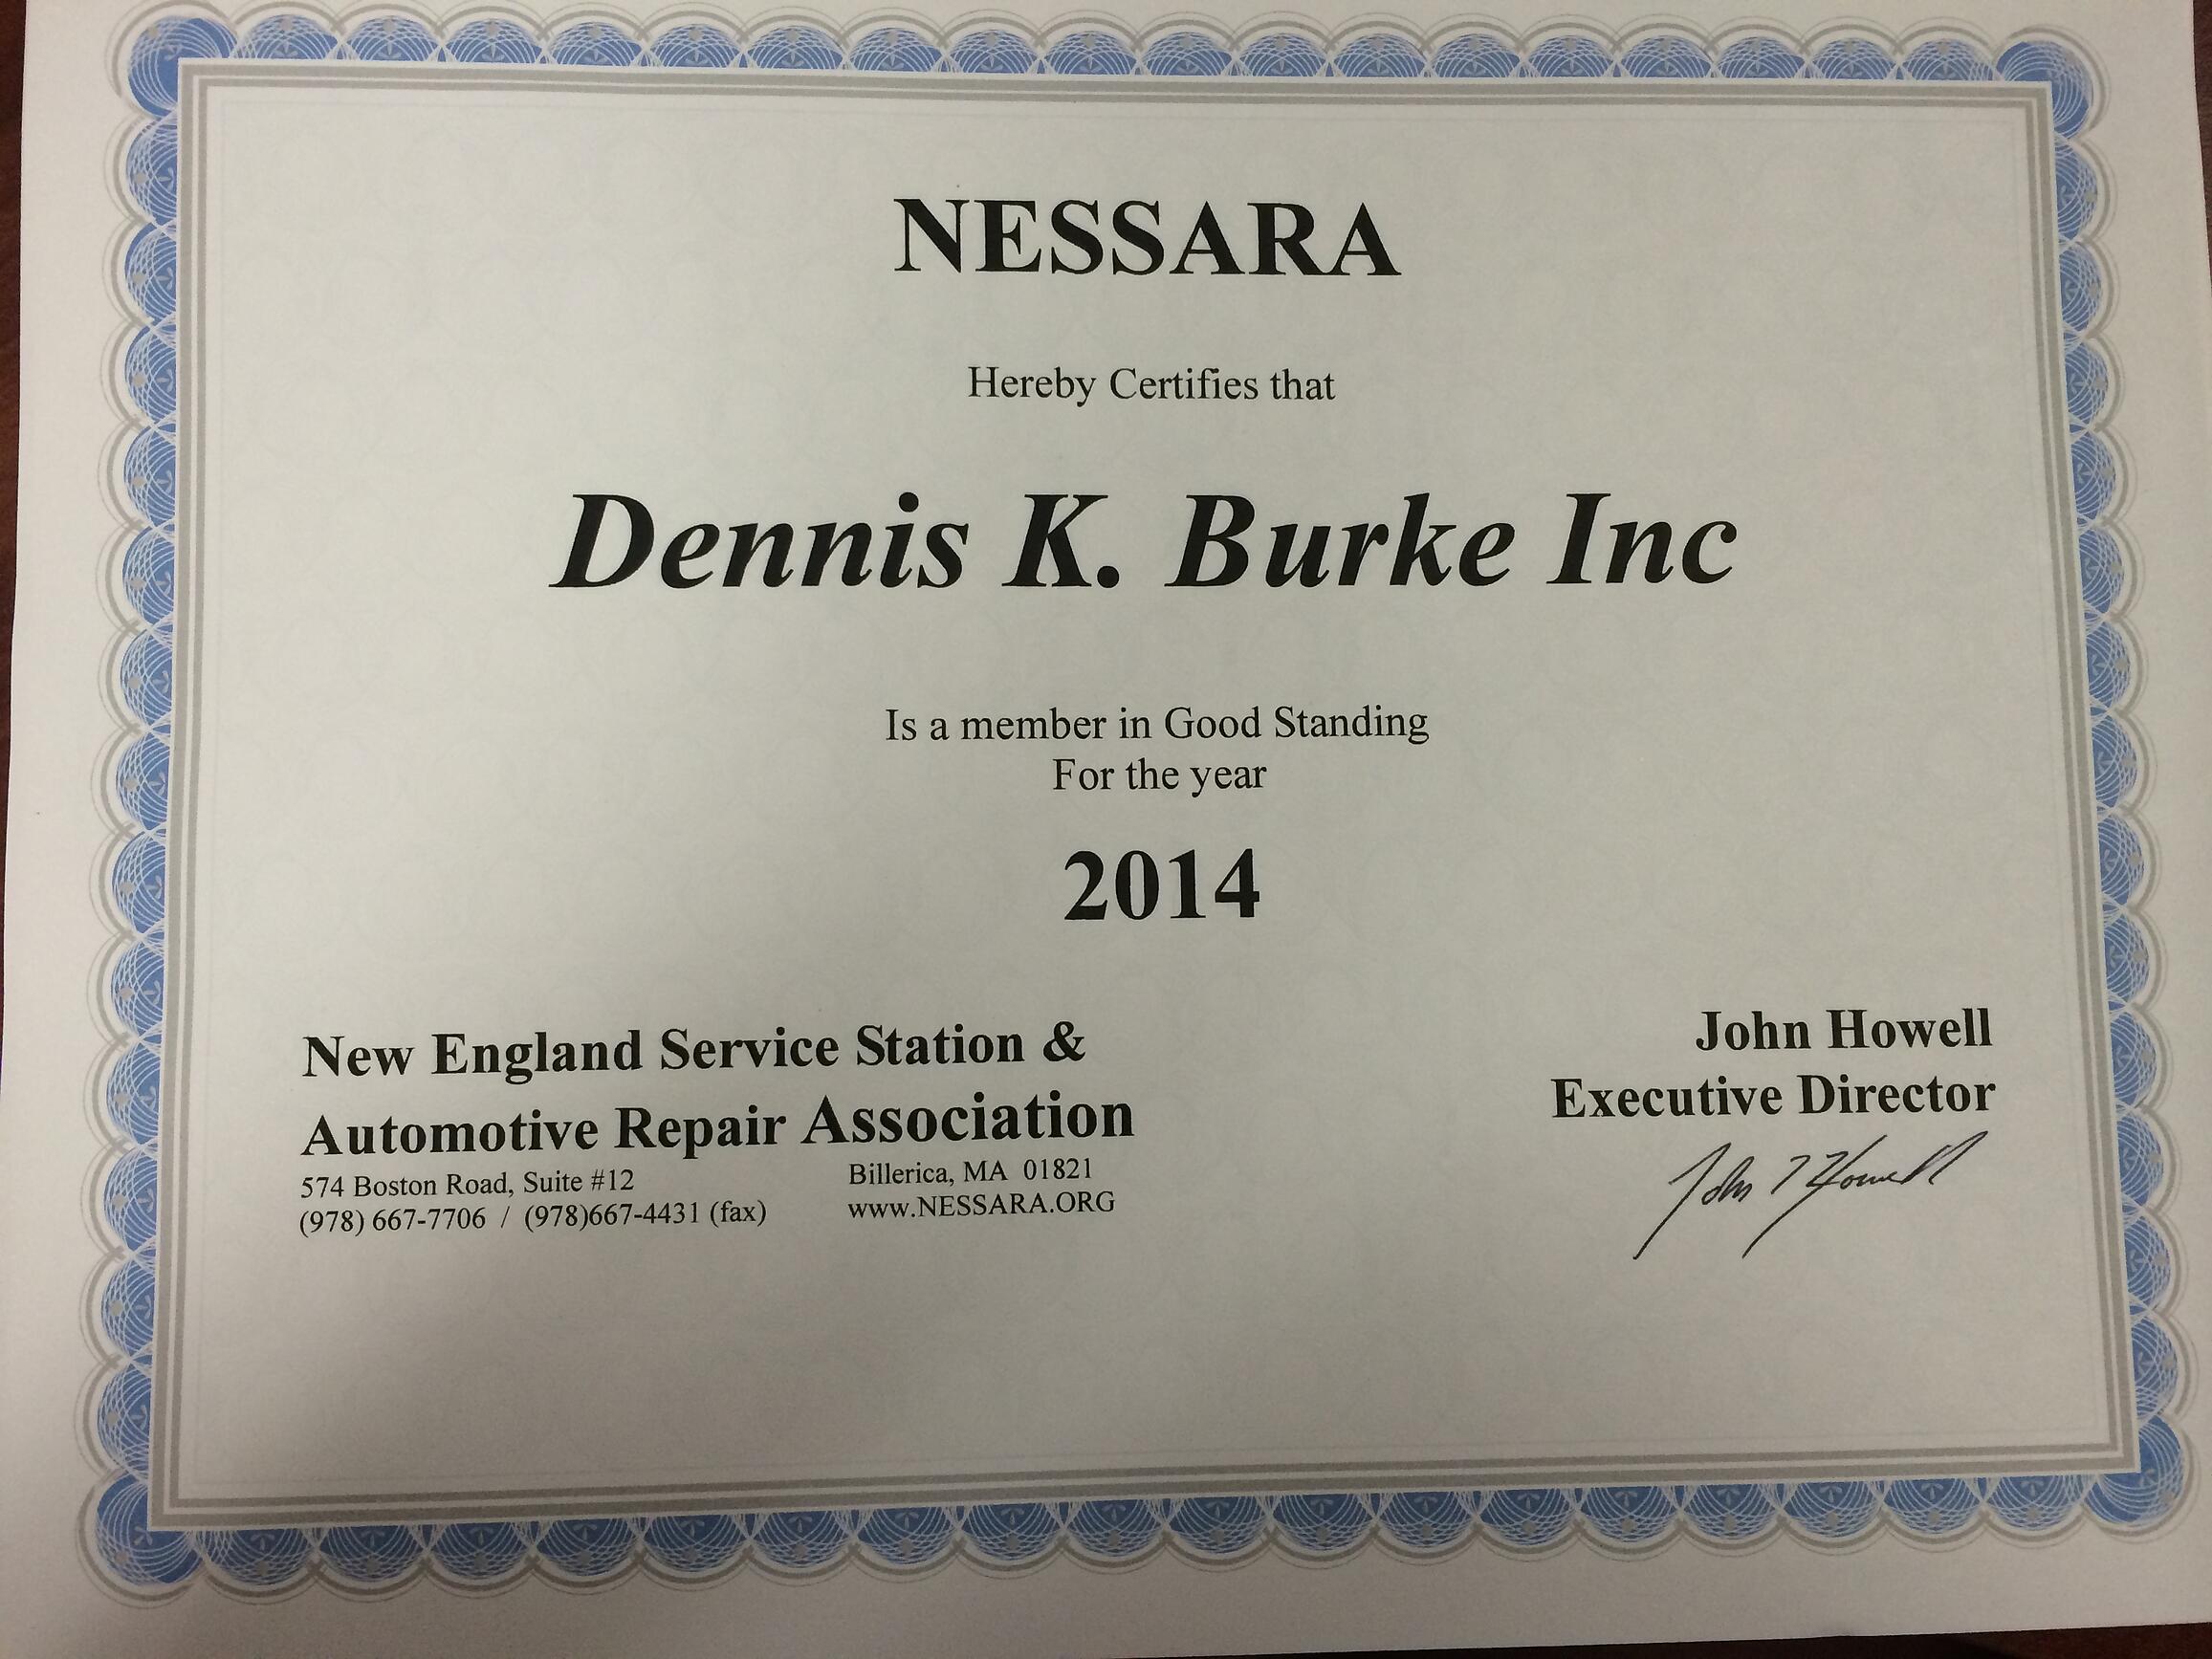 Nessara certificate for Dennis K. Burke Inc. Circa 2014